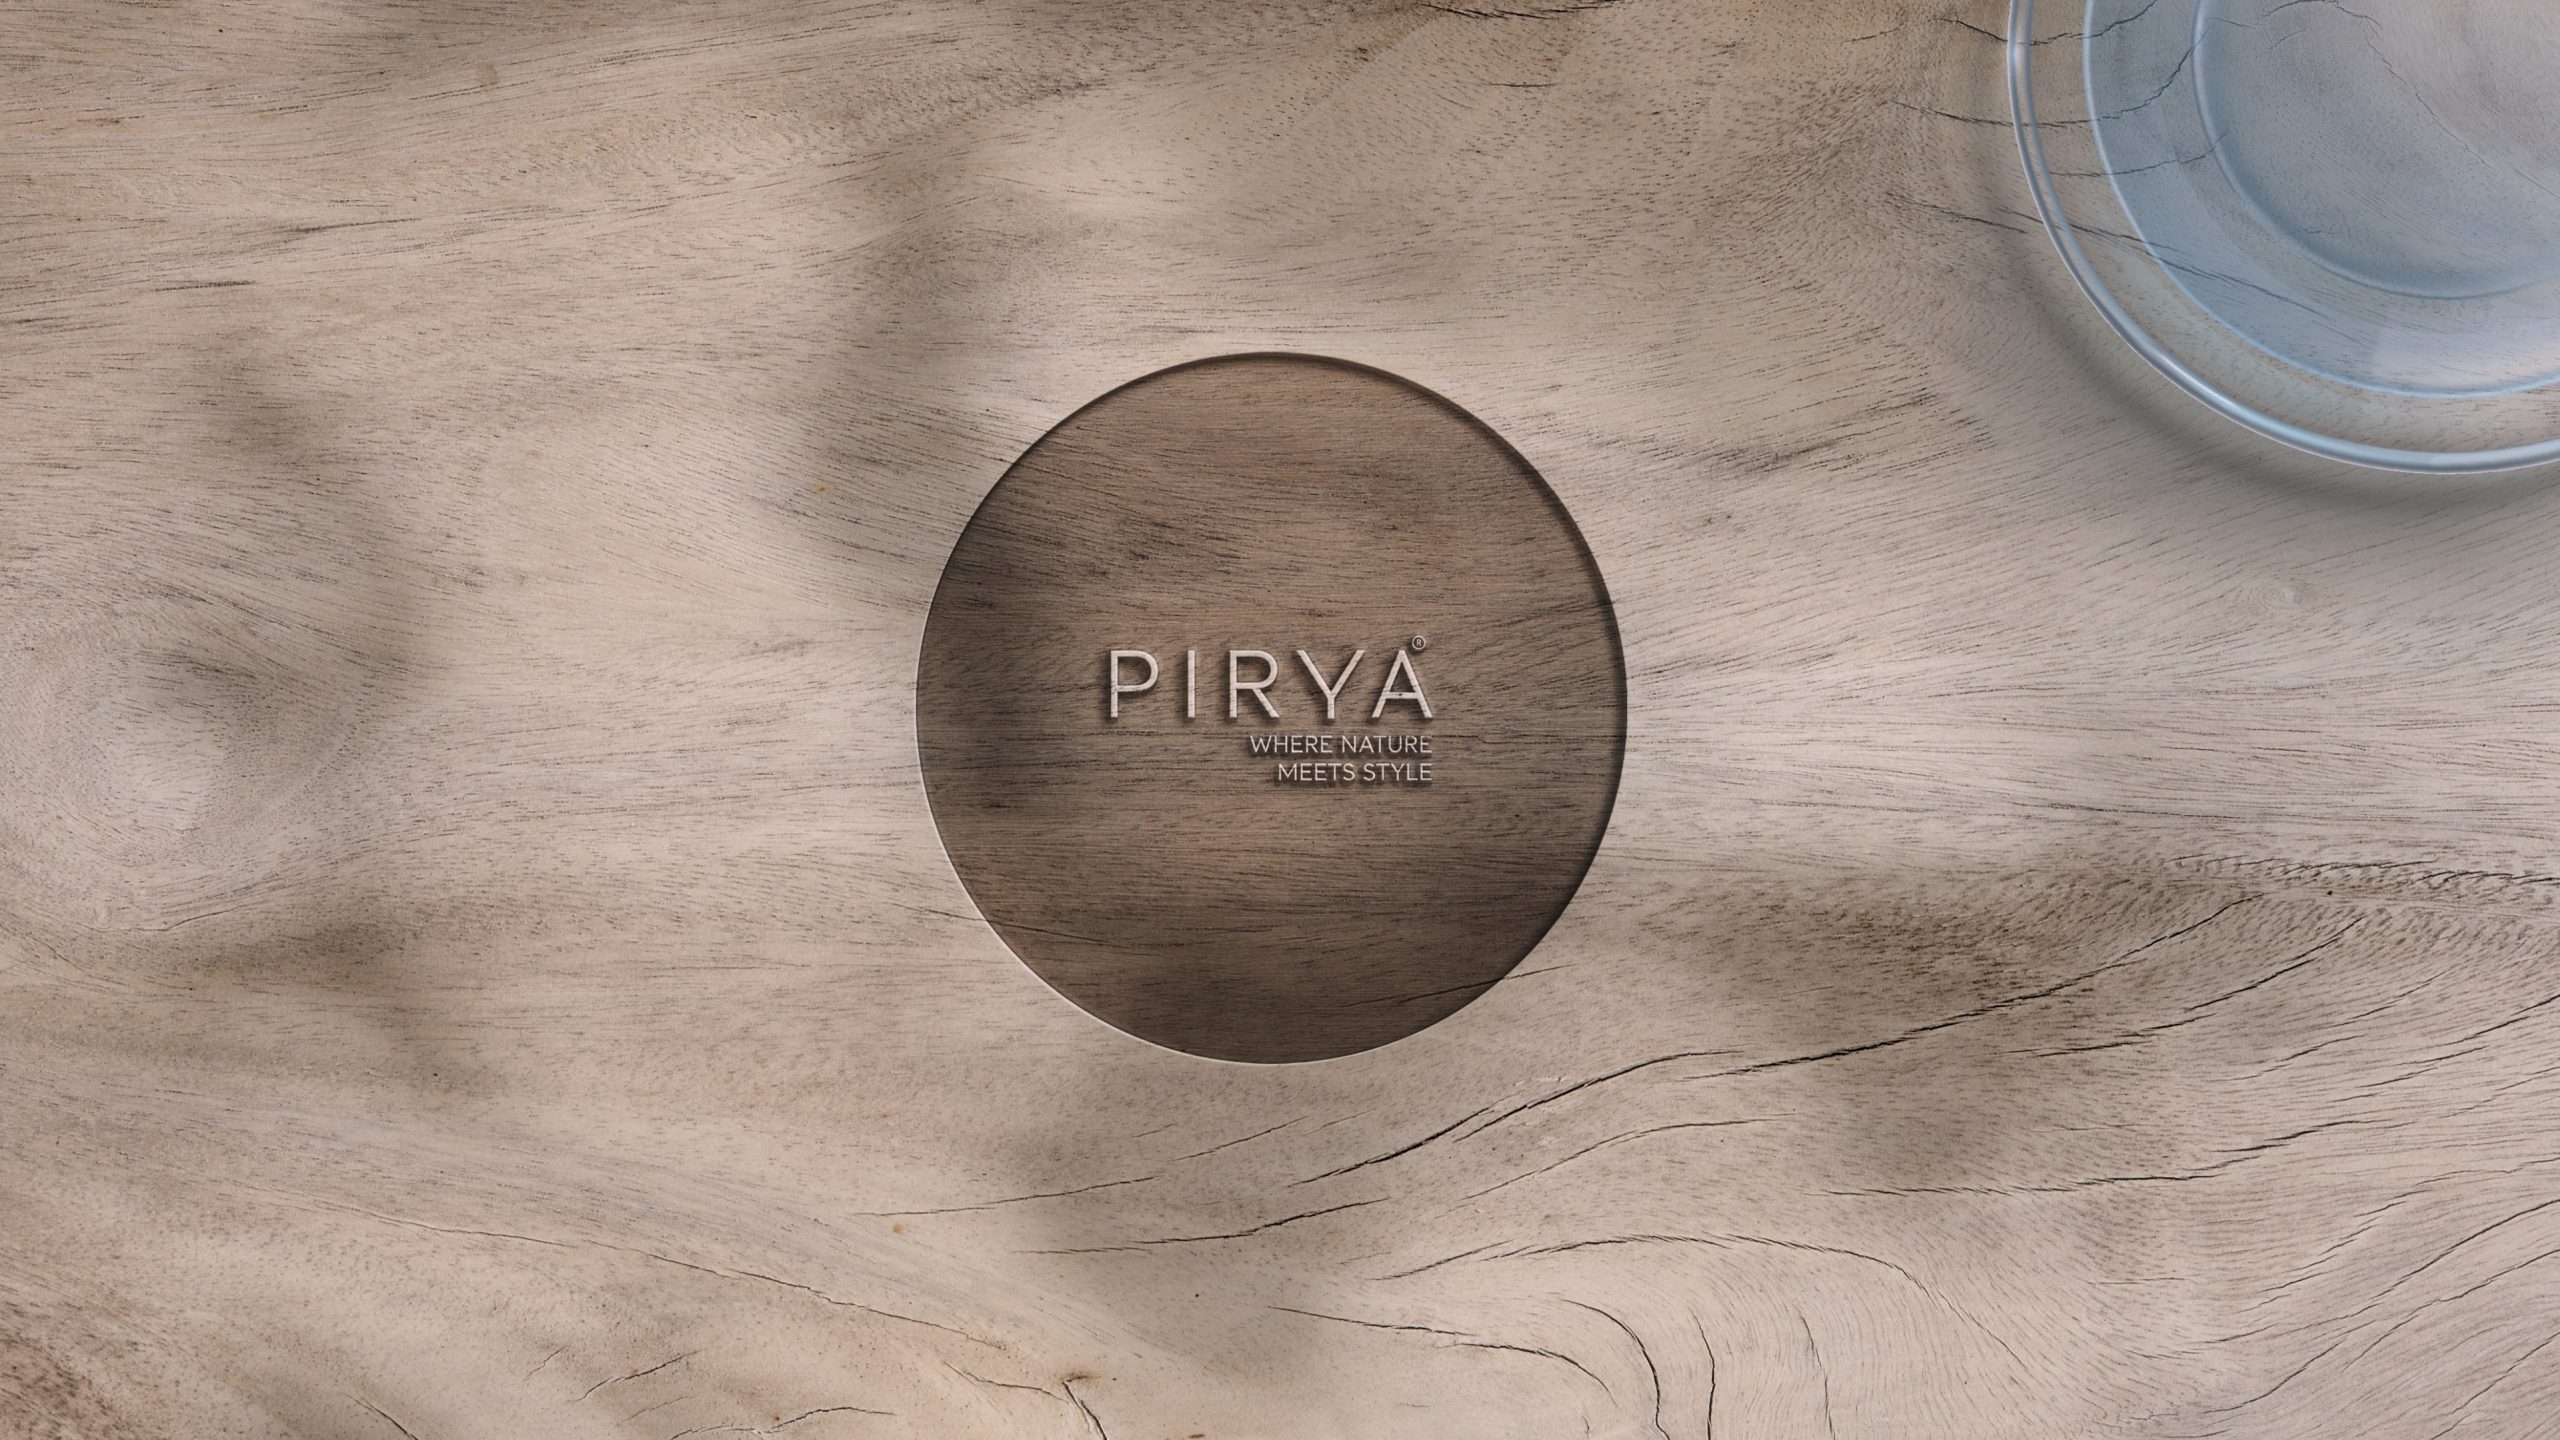 PIRYA - Where Nature Meets Style